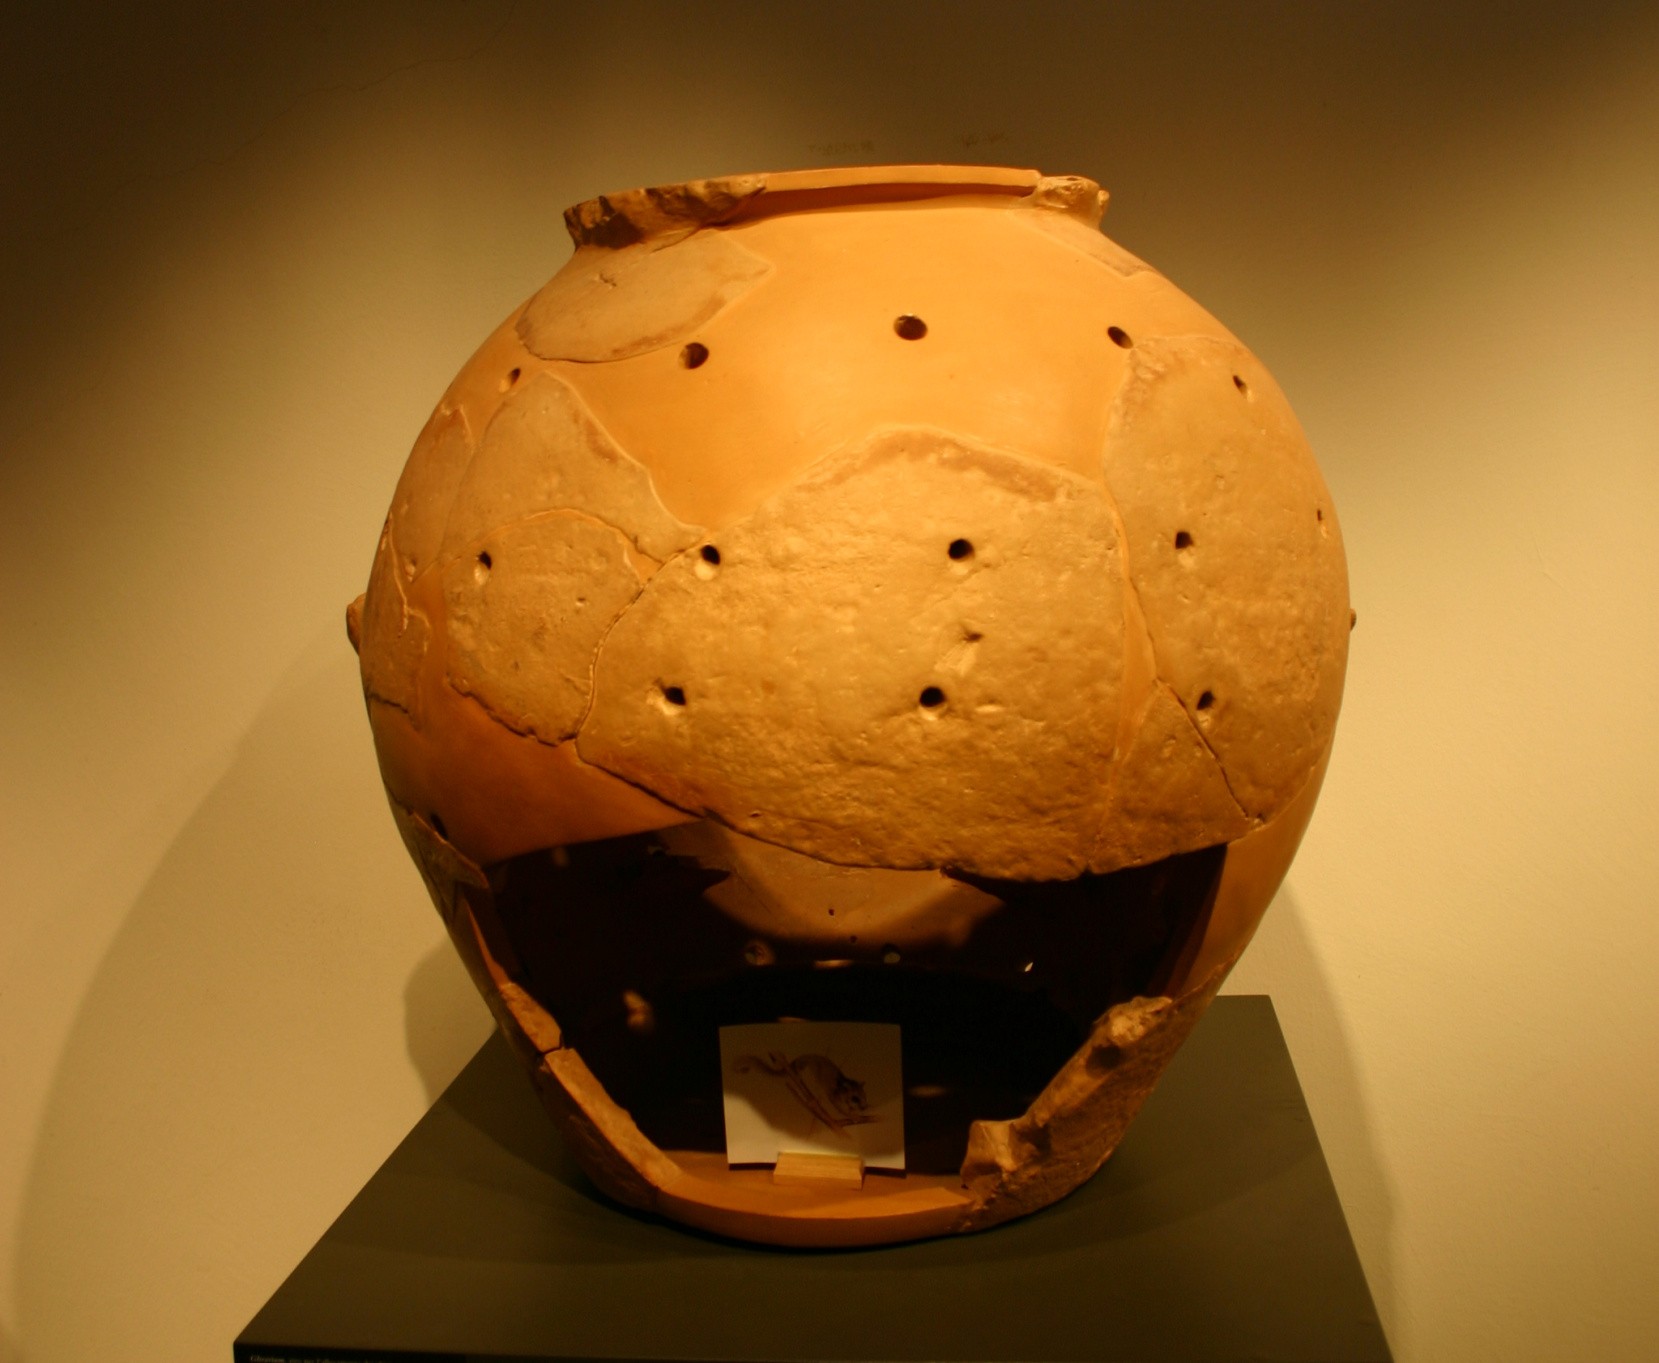 Glirarij je posoda iz terakote, ki se uporablja za shranjevanje užitnih polhov. Te živali so veljale za poslastico v etruščanskem obdobju in pozneje v rimskem cesarstvu.